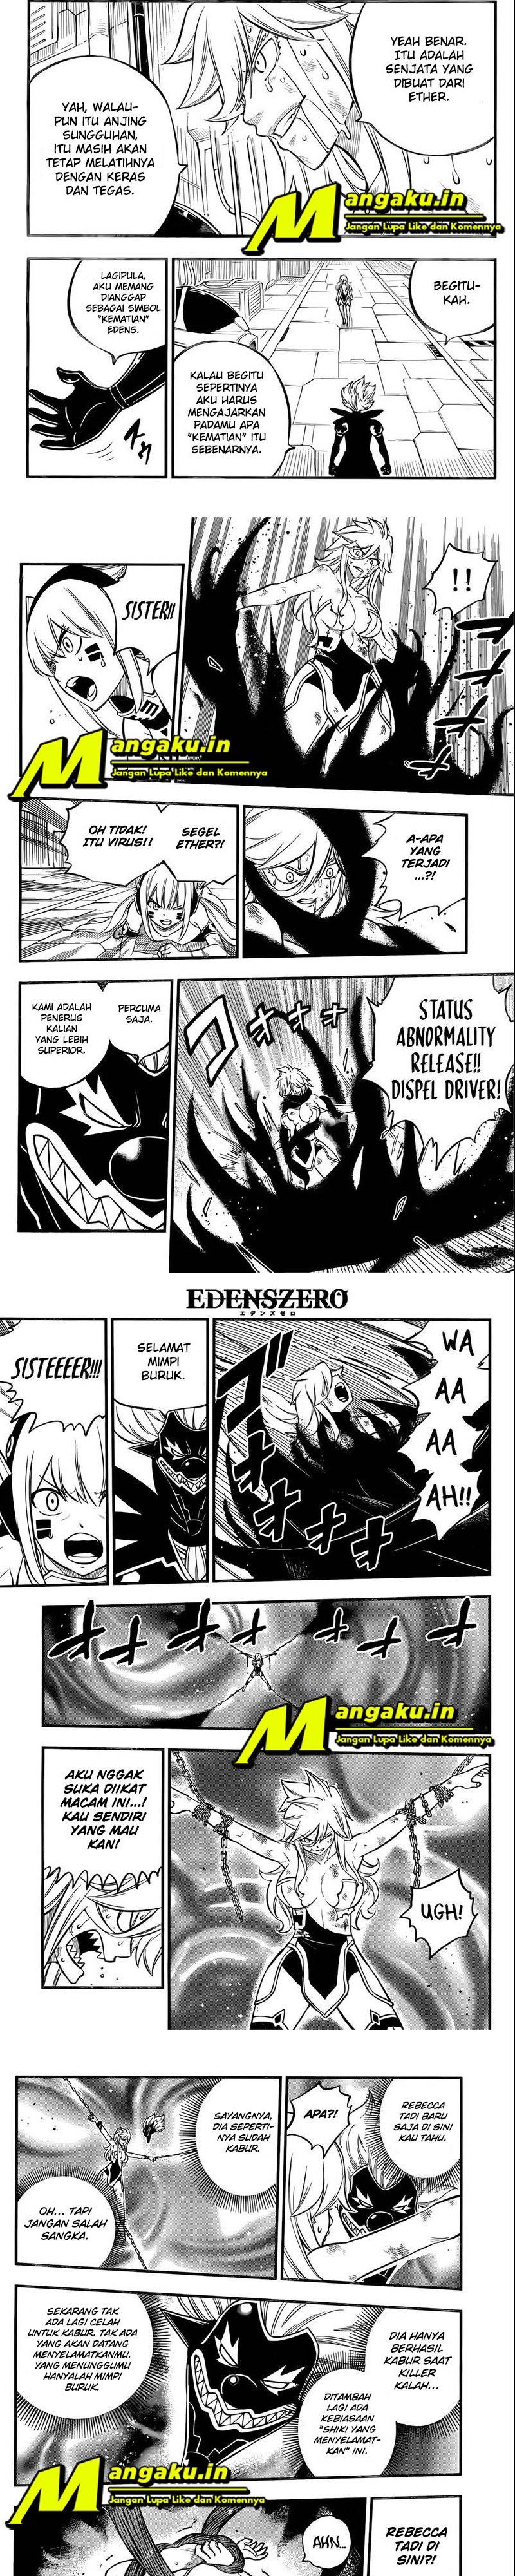 Eden’s Zero Chapter 198